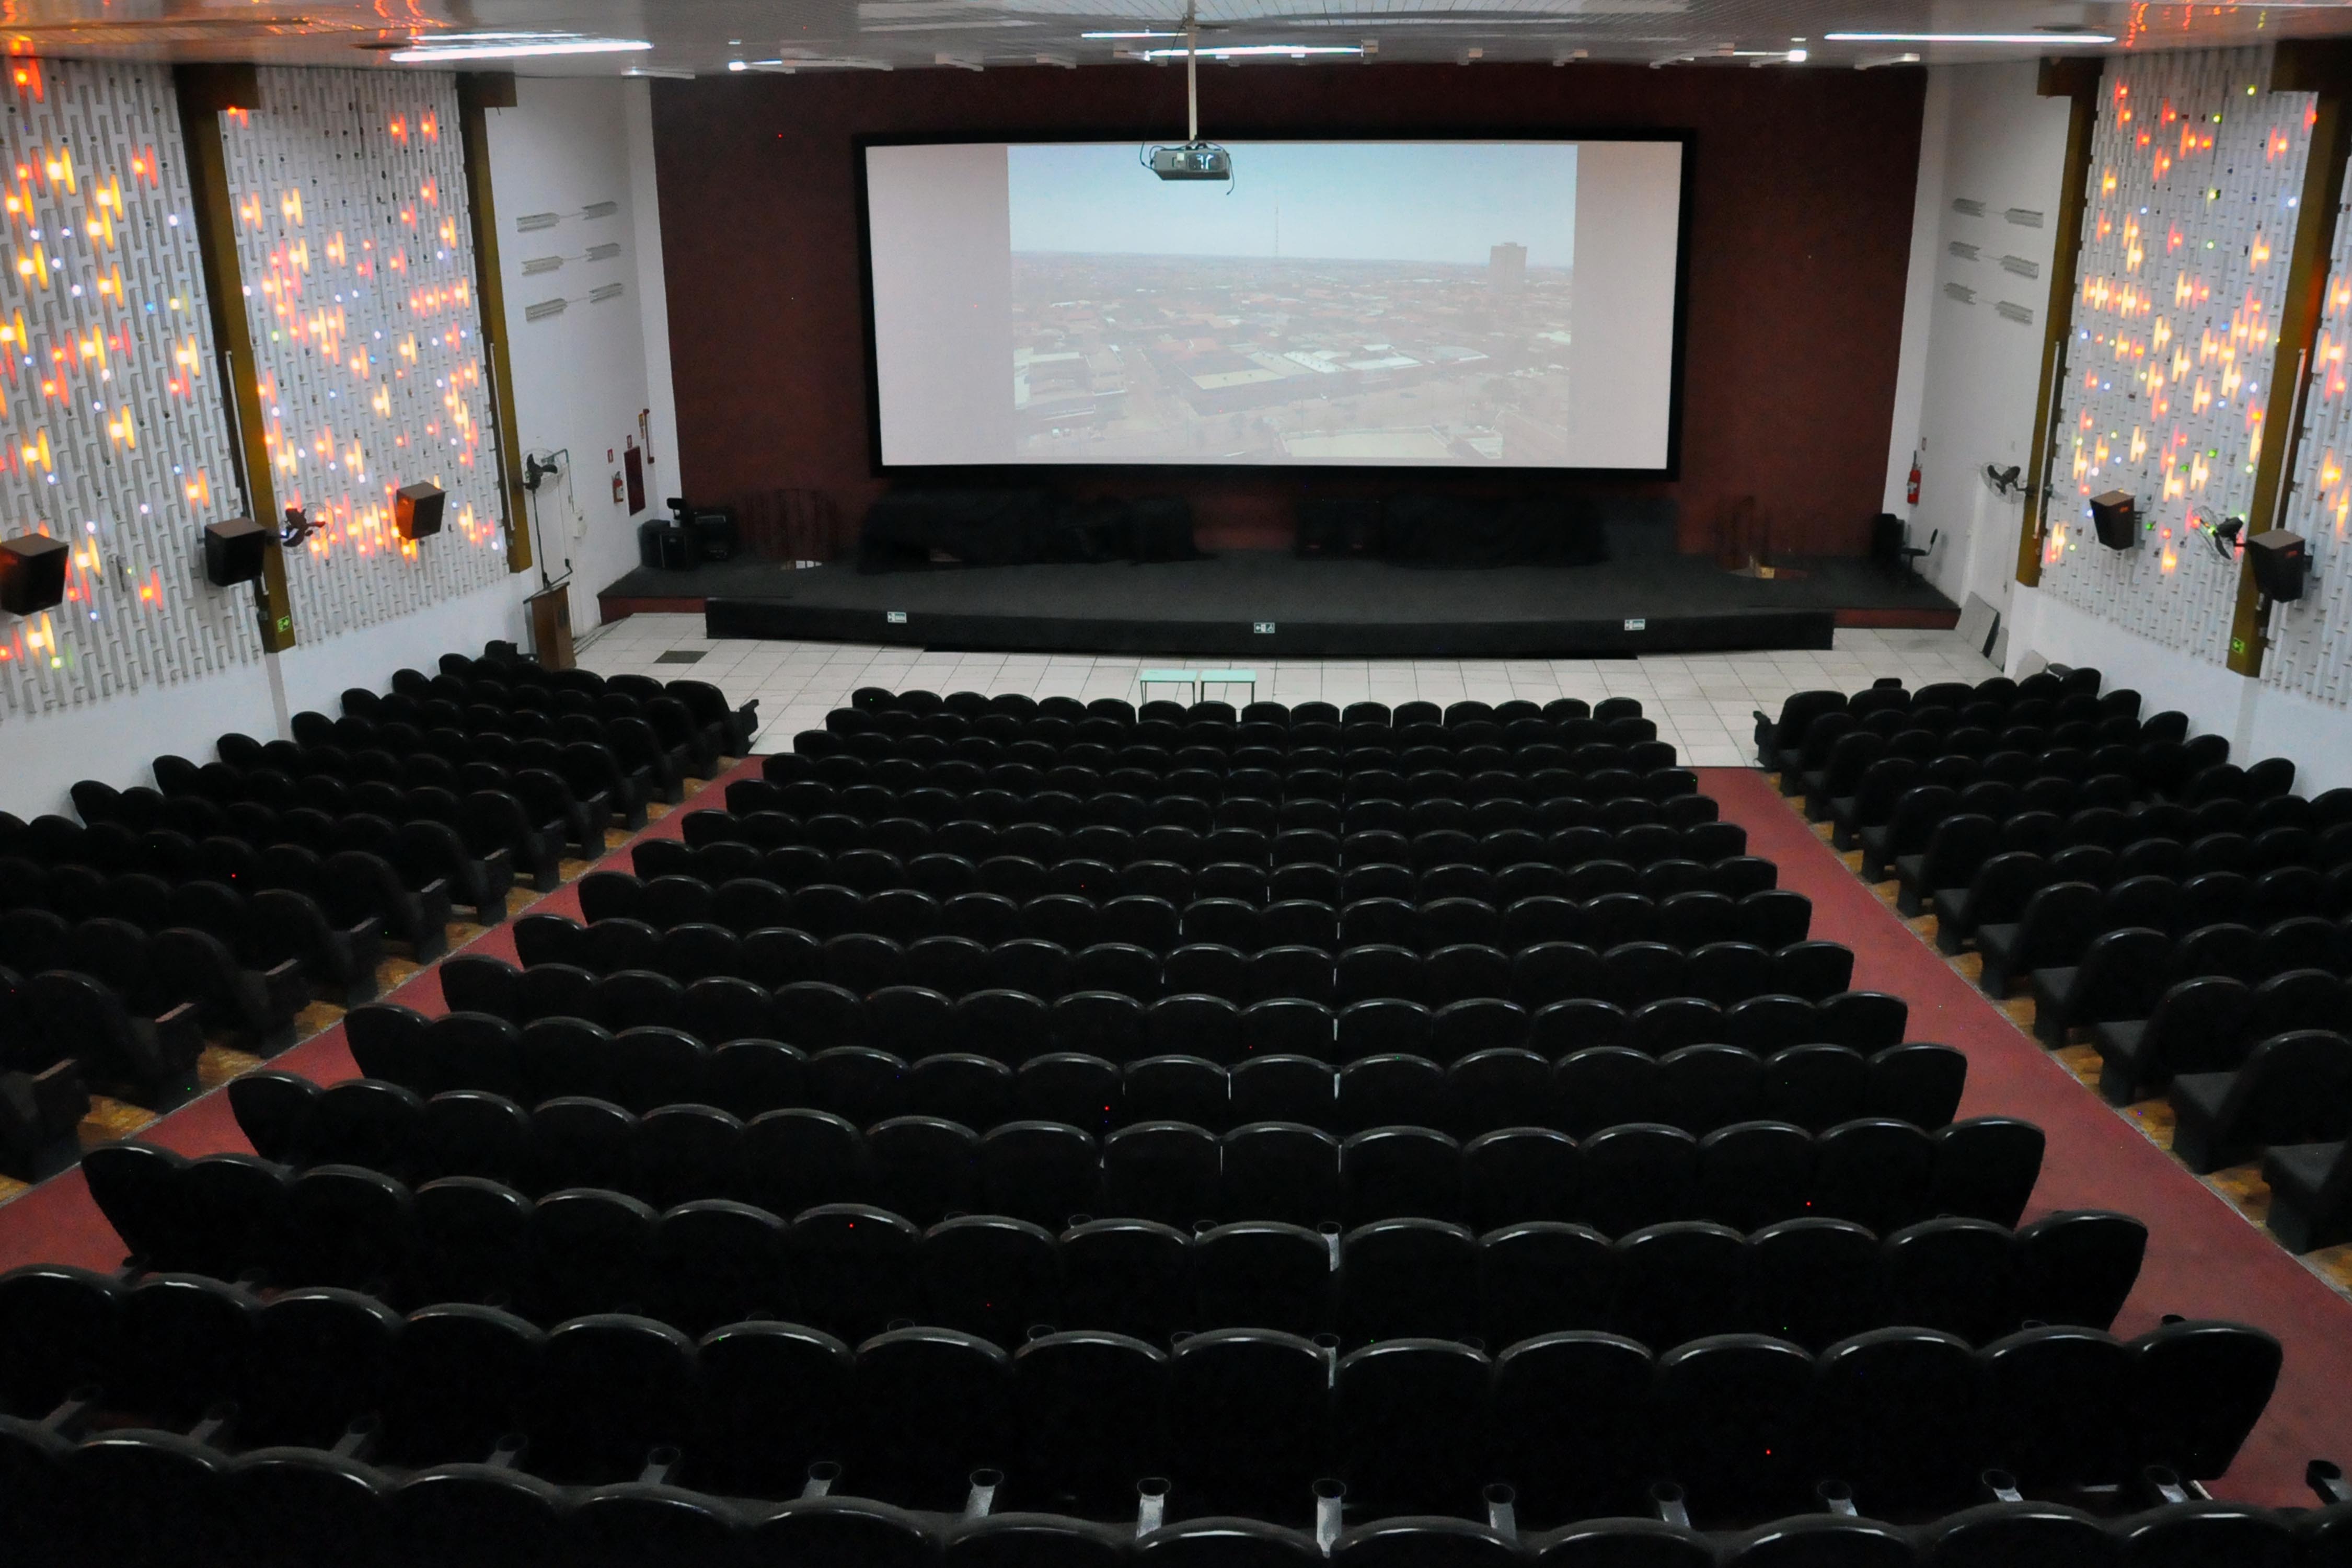 Londrinenses relembram momentos marcantes no Cine Com-Tour